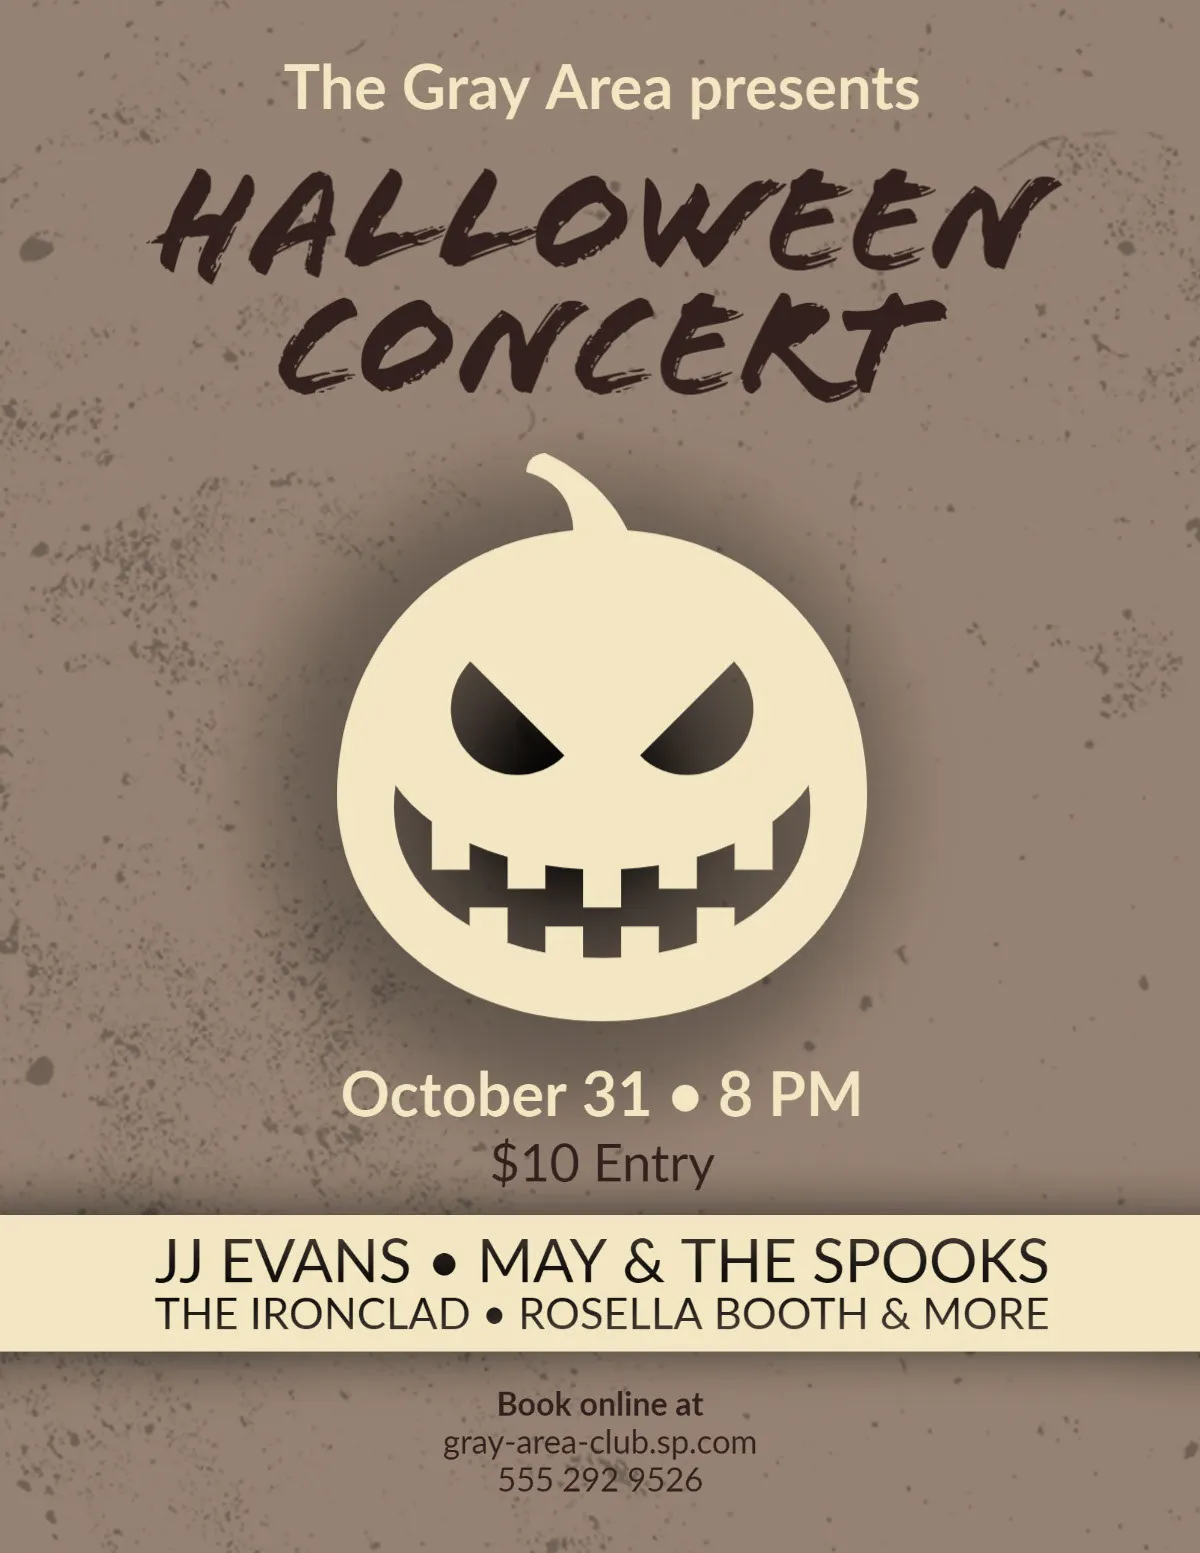 Brown Spooky Halloween Concert Advertisement Flyer